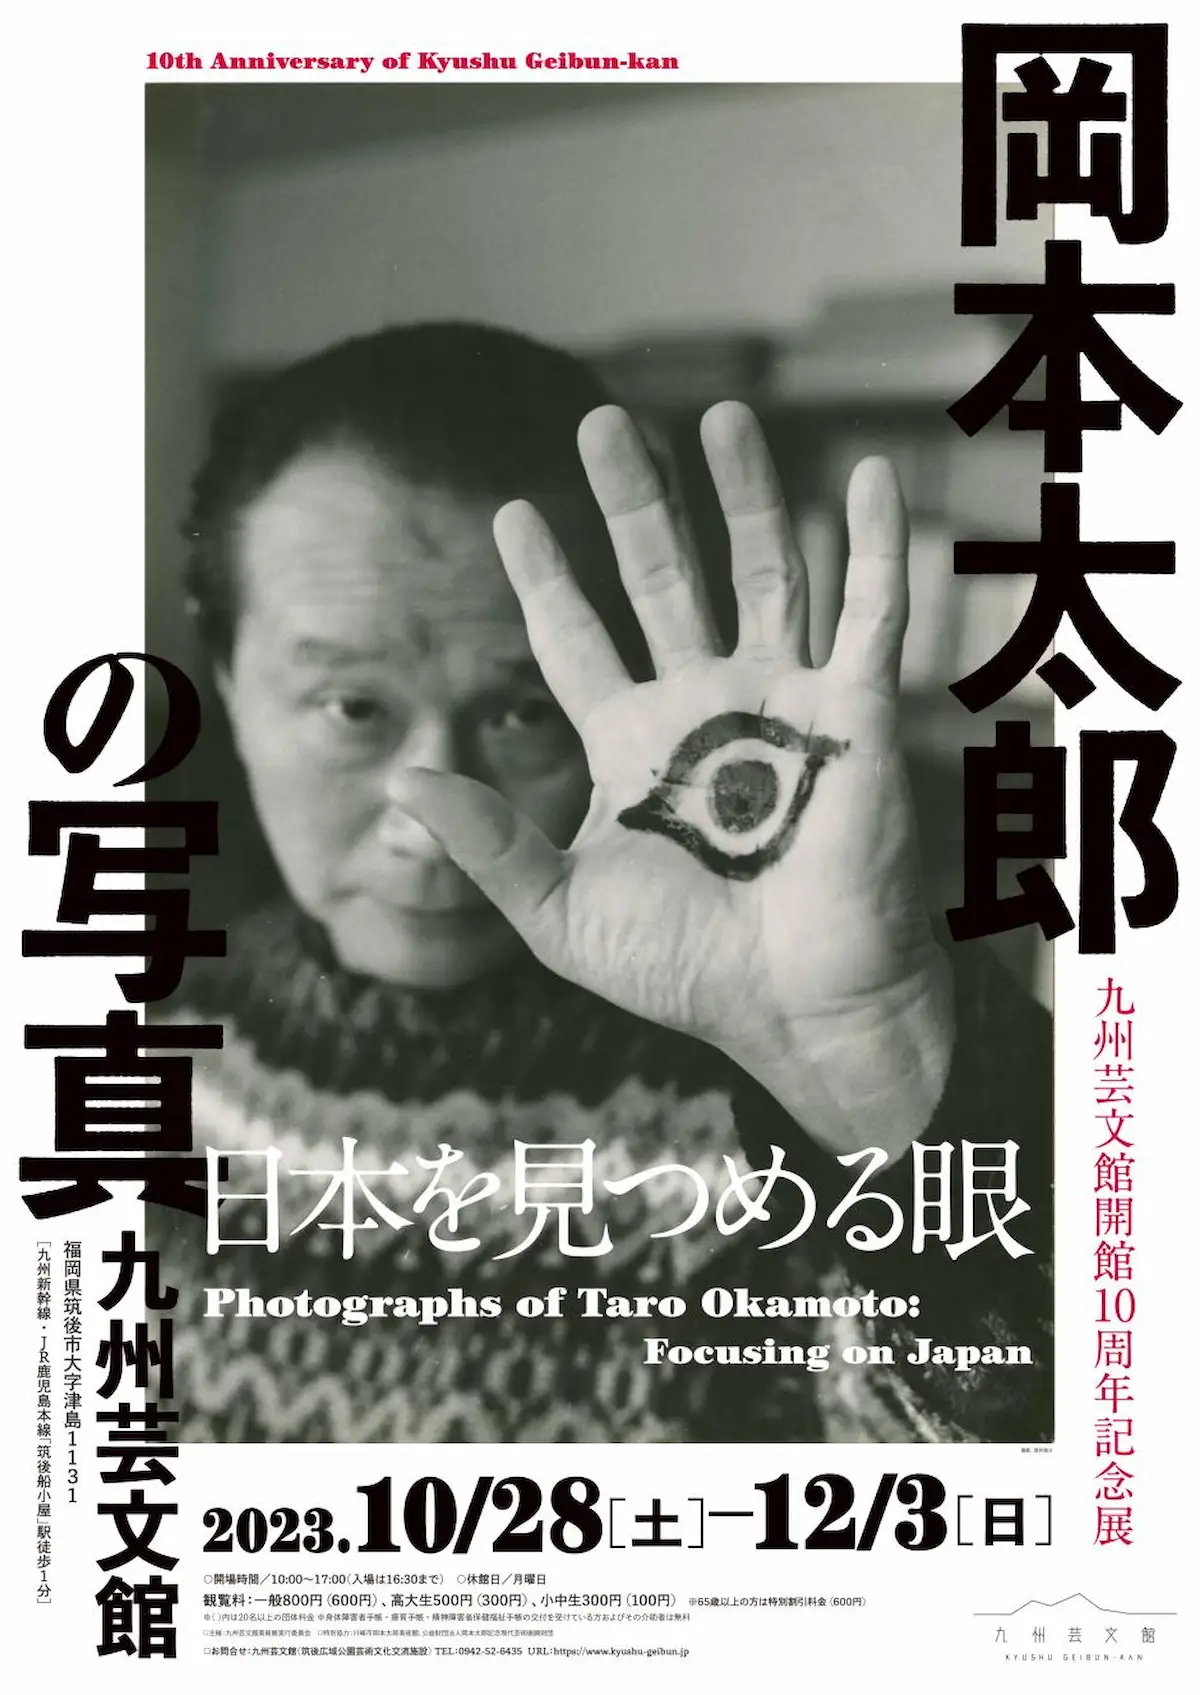 九州芸文館開館10周年記念展「岡本太郎の写真－日本を見つめる眼」10月28日より開催　20世紀を代表する芸術家・岡本太郎の写真を中心とした展覧会